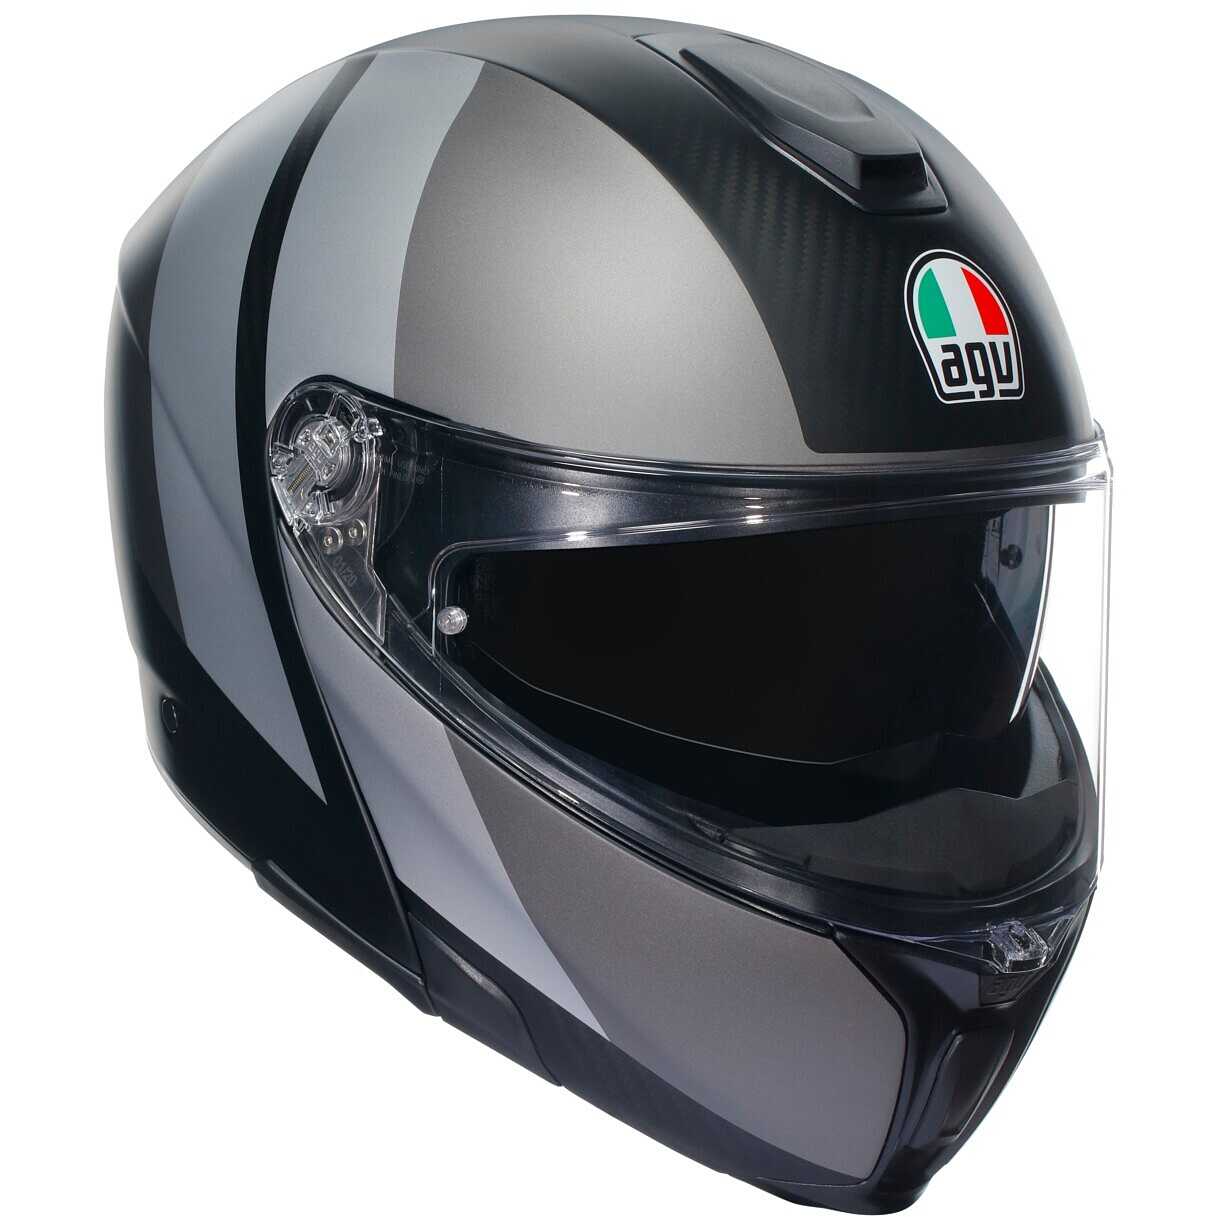 Paraleve moto AERO-GP - Accessori Moto In vendita a Varese